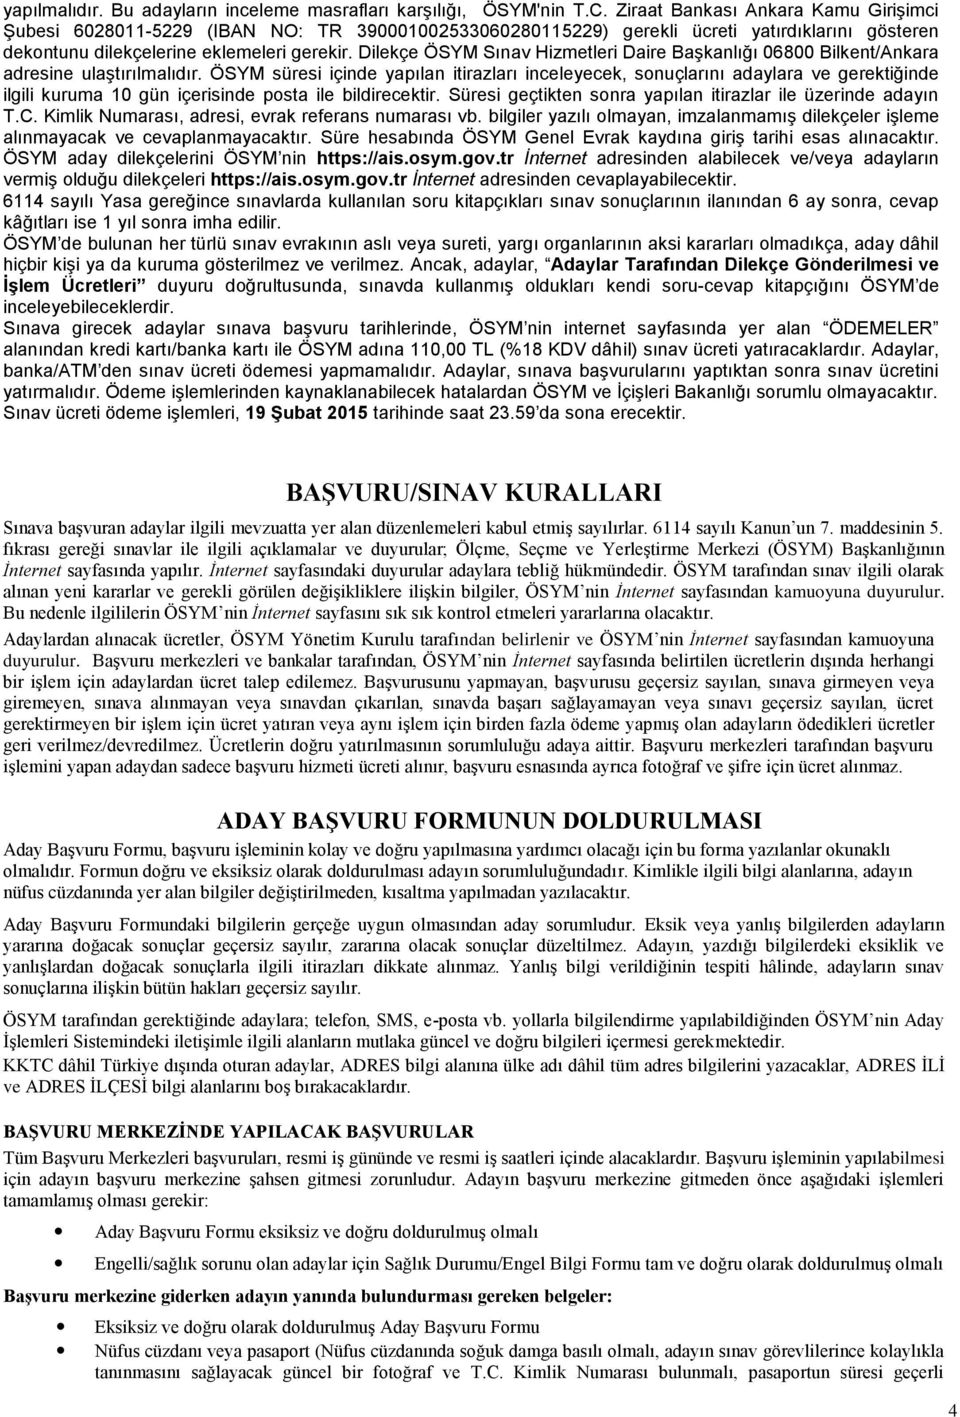 Dilekçe ÖSYM Sınav Hizmetleri Daire Başkanlığı 06800 Bilkent/Ankara adresine ulaştırılmalıdır.